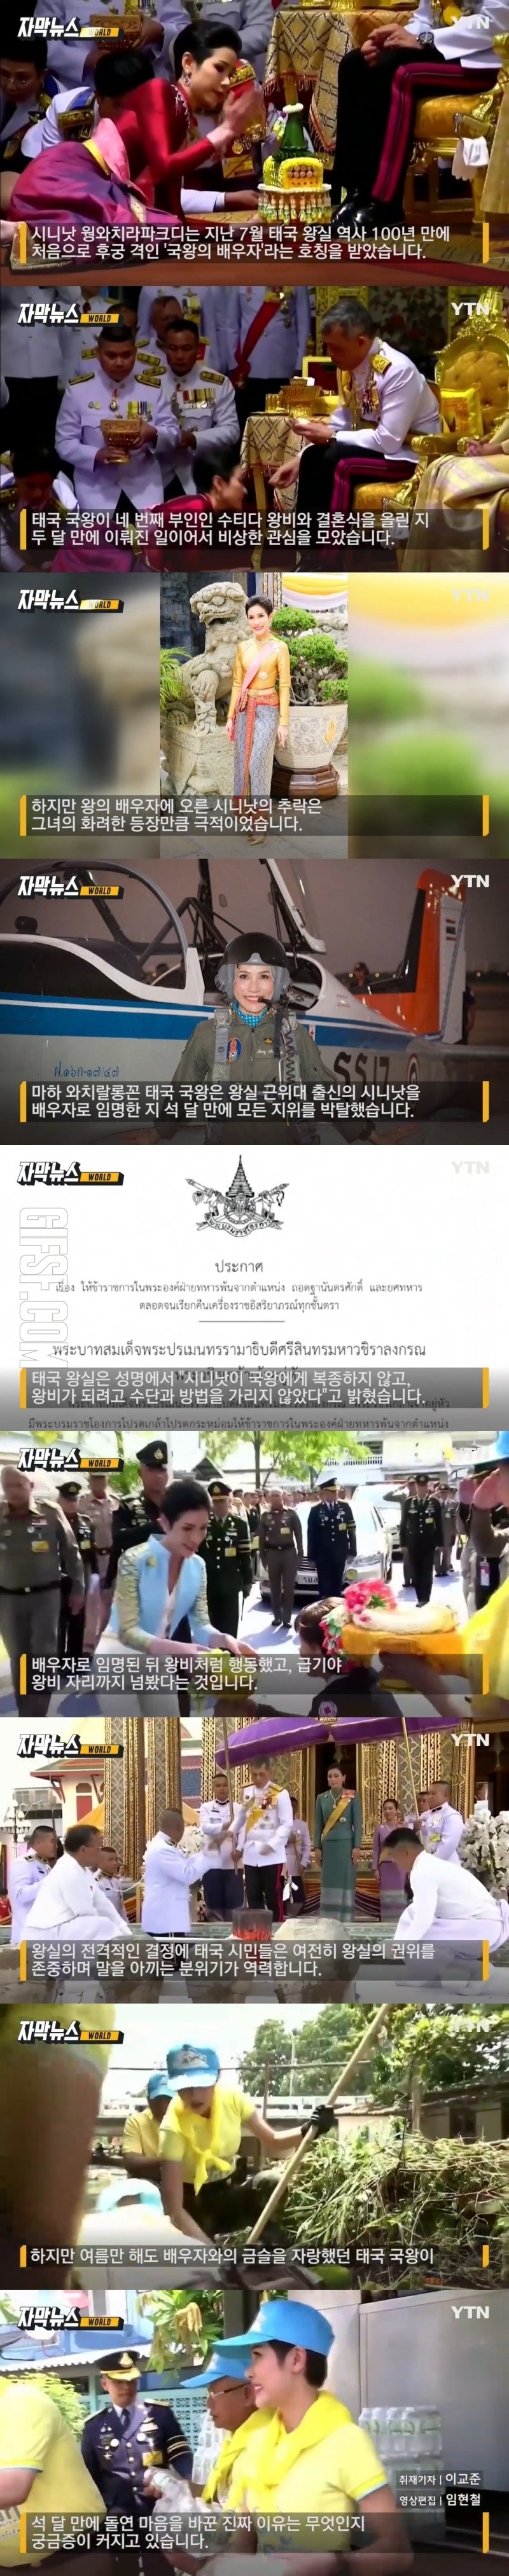 태국, 100년 만에 첫 ',왕의 배우자', 석 달 만에 자격 박탈.jpg